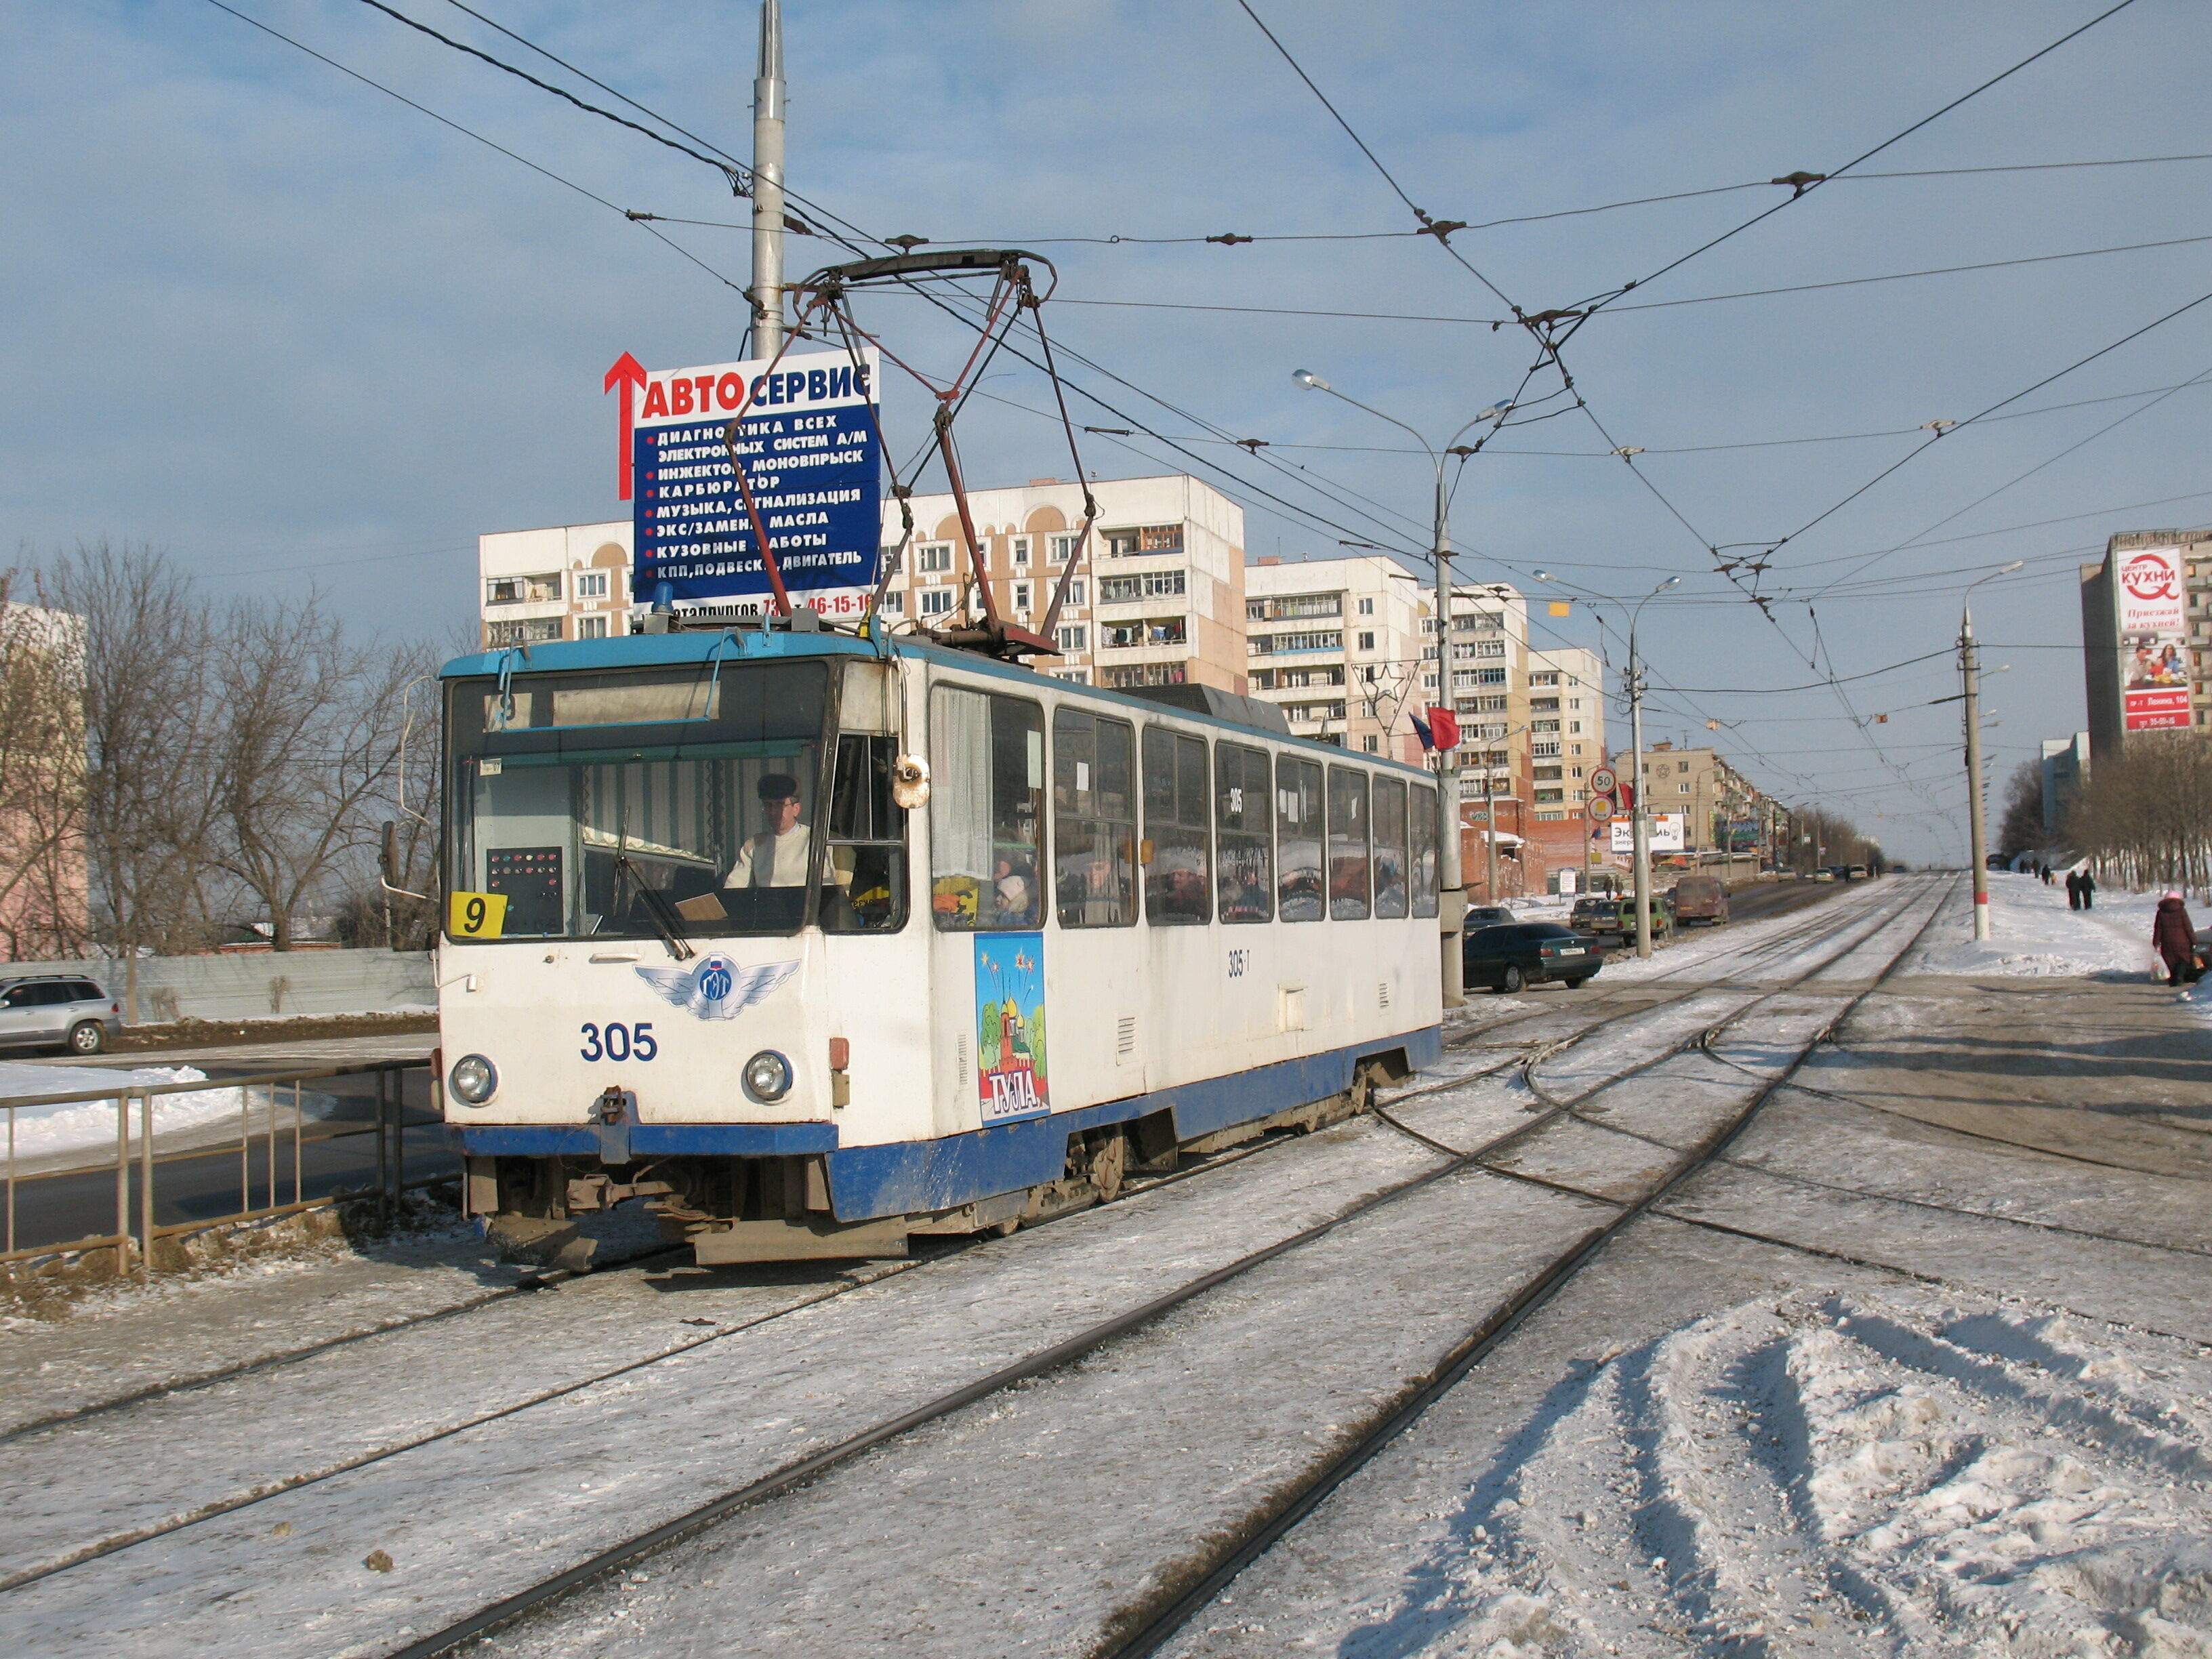 Трамвай Tatra T6B5 №305 9 маршрута